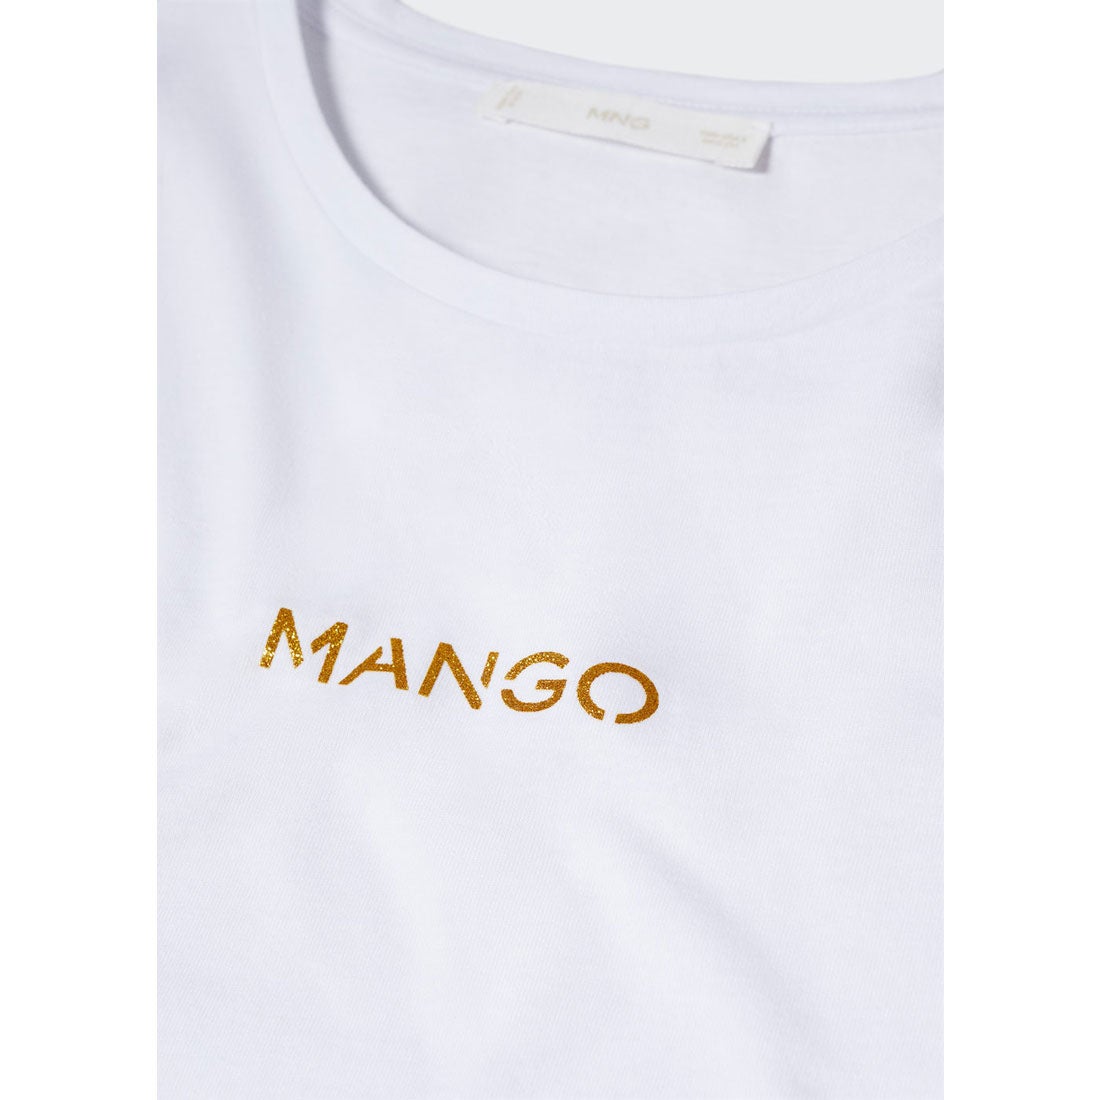 Tシャツ .-- MANGOLOG-H （ホワイト） -MANGO - マンゴ公式オンライン